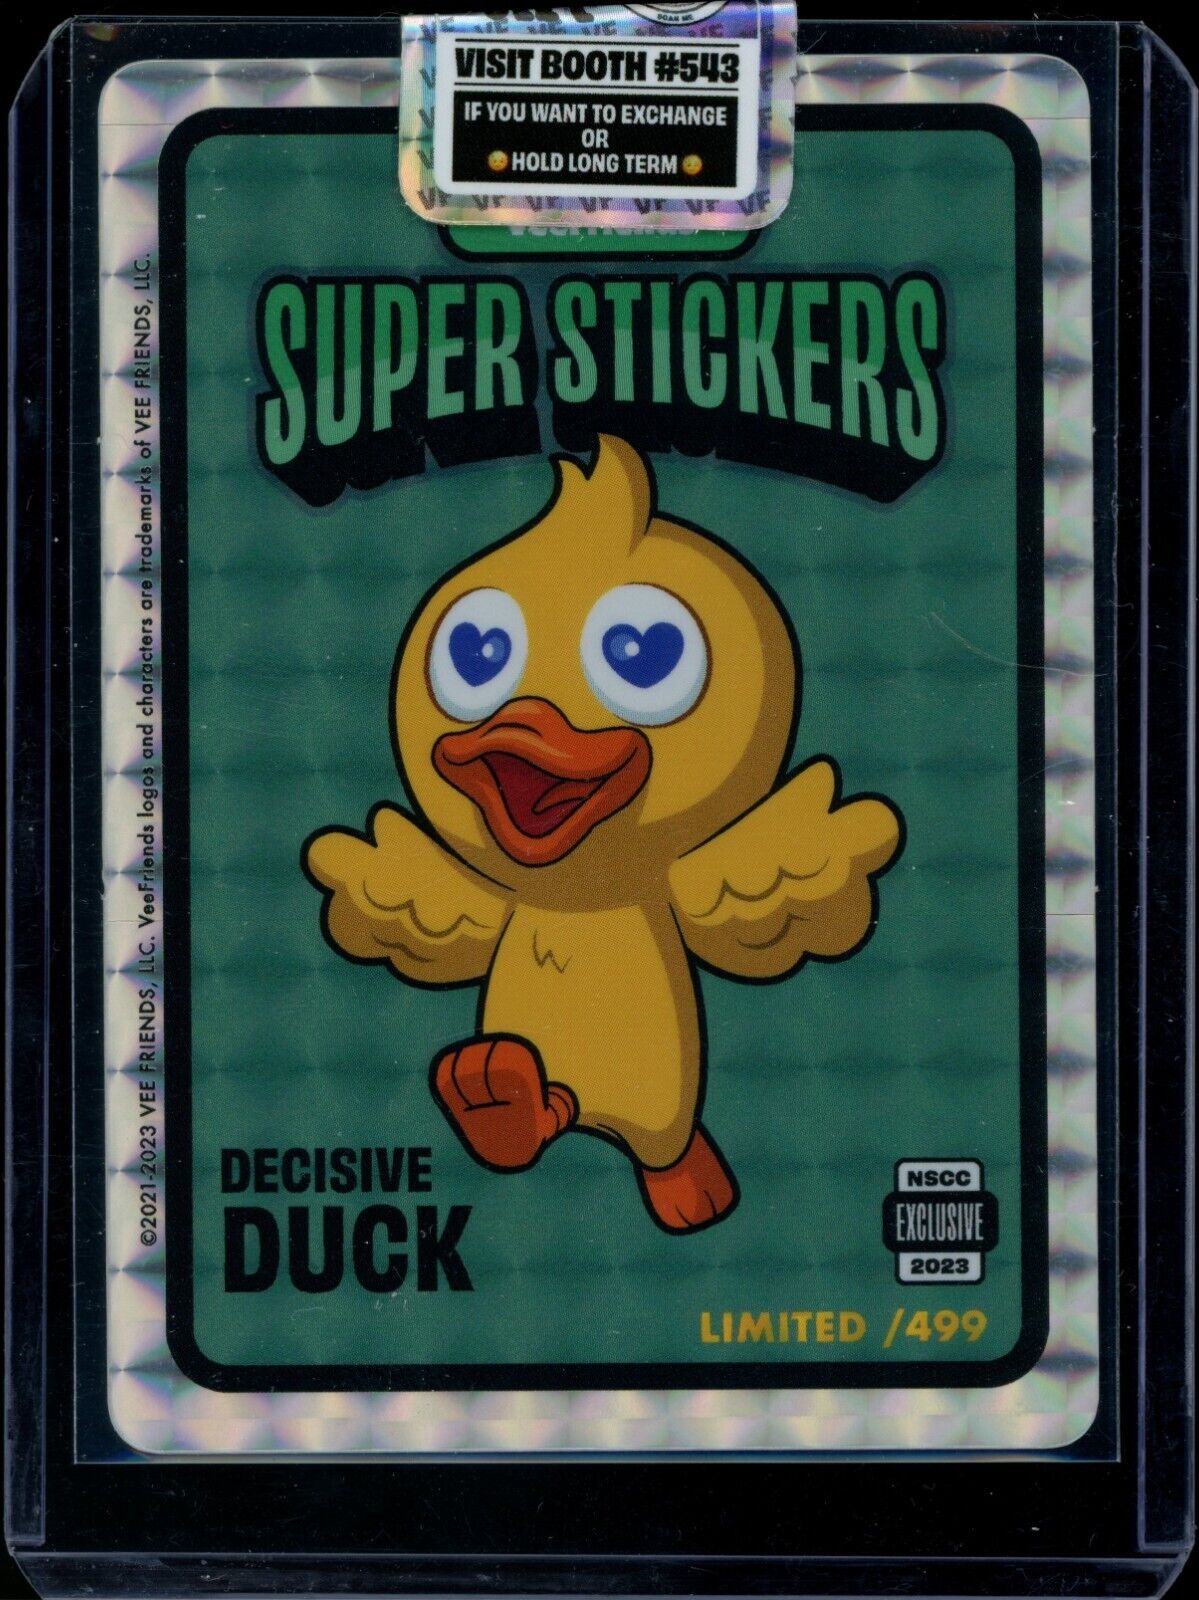 Veefriends Super Stickers Decisive Duck /499 Exclusive National Gary Vee 1 NSCC